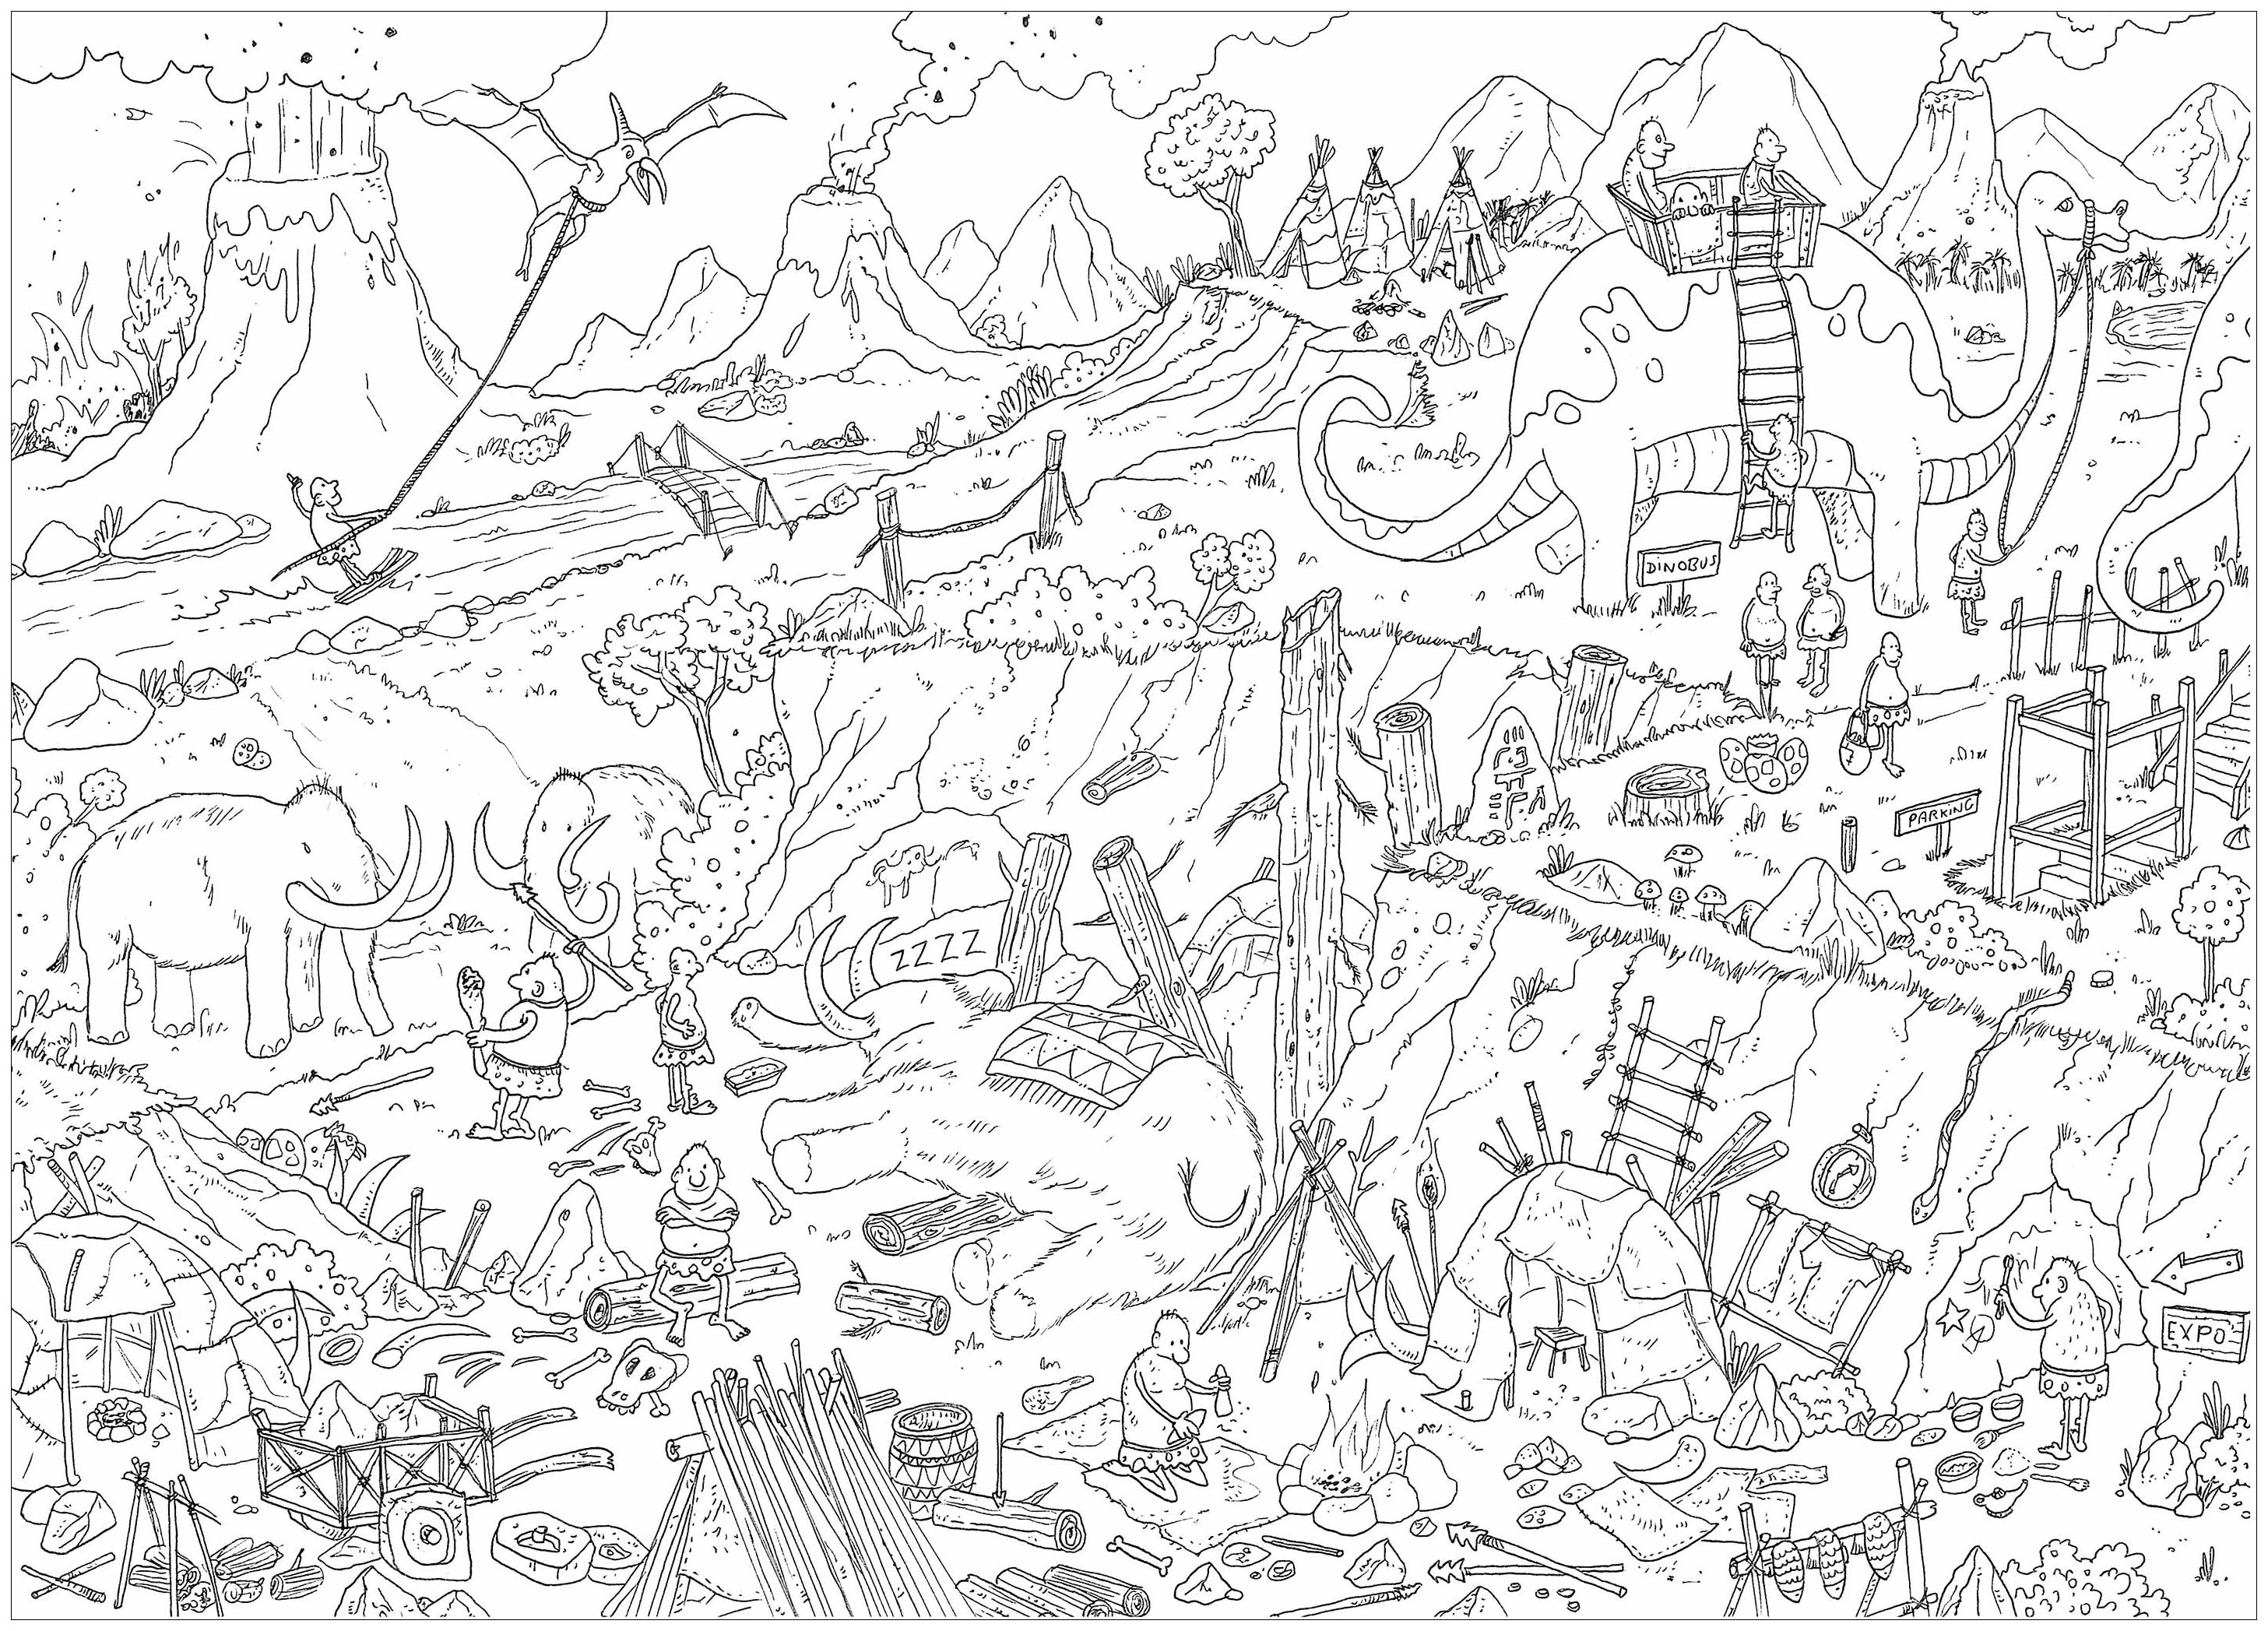 'Pré-história', uma página para colorir complexa, estilo 'Onde está o Waldo?